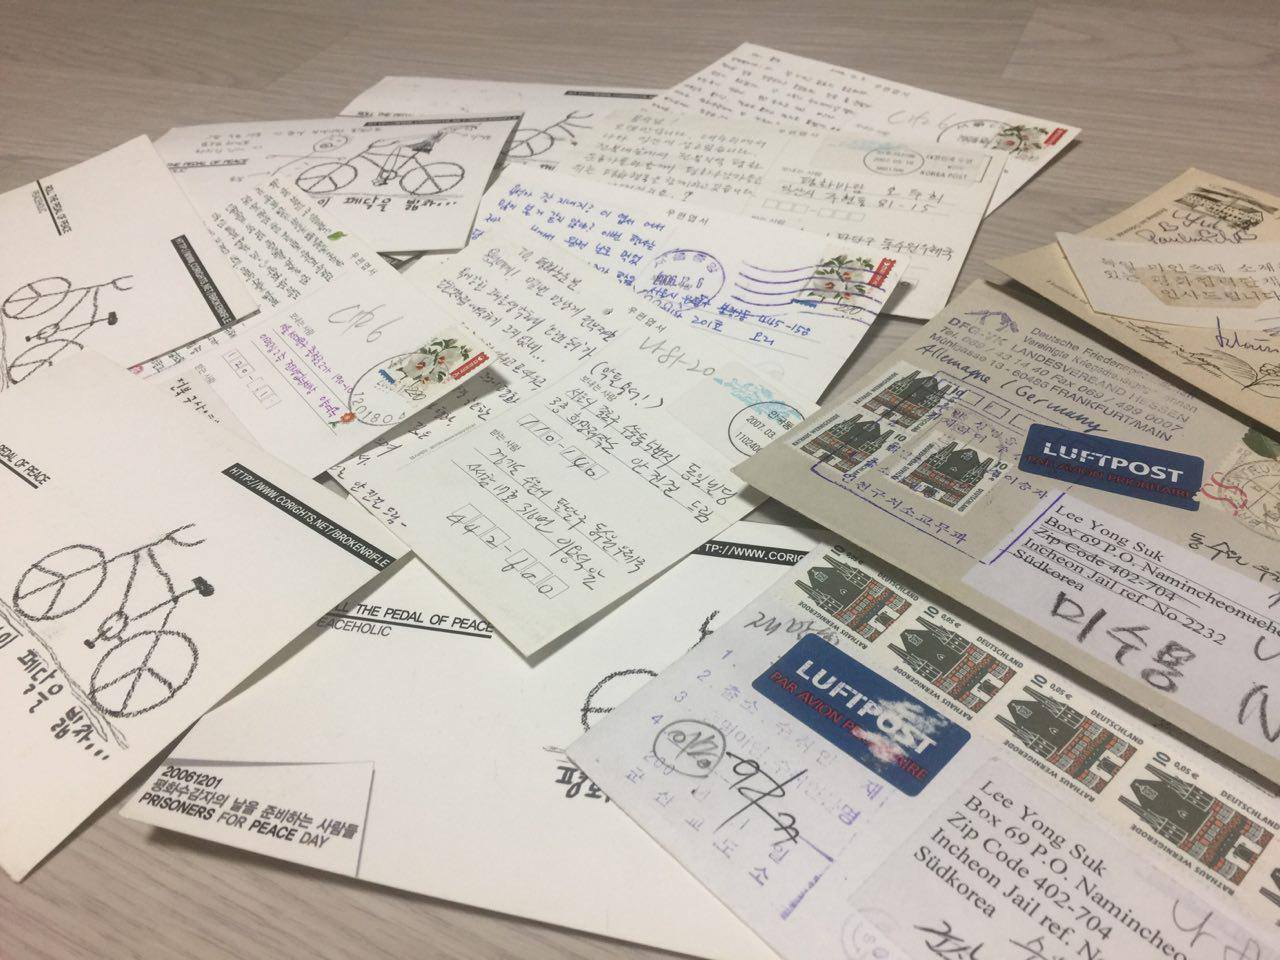 편지는 감옥 안에 있는 사람들에게 큰 힘이 된다. 날마다 편지 도착하는 시간을 기다리며, 저녁 때는 편지에 답장을 쓰며 지루한 시간을 보낼 수 있었다. 사진은 평화수감자의 날(12월 1일)에 즈음해서 받은 엽서들.